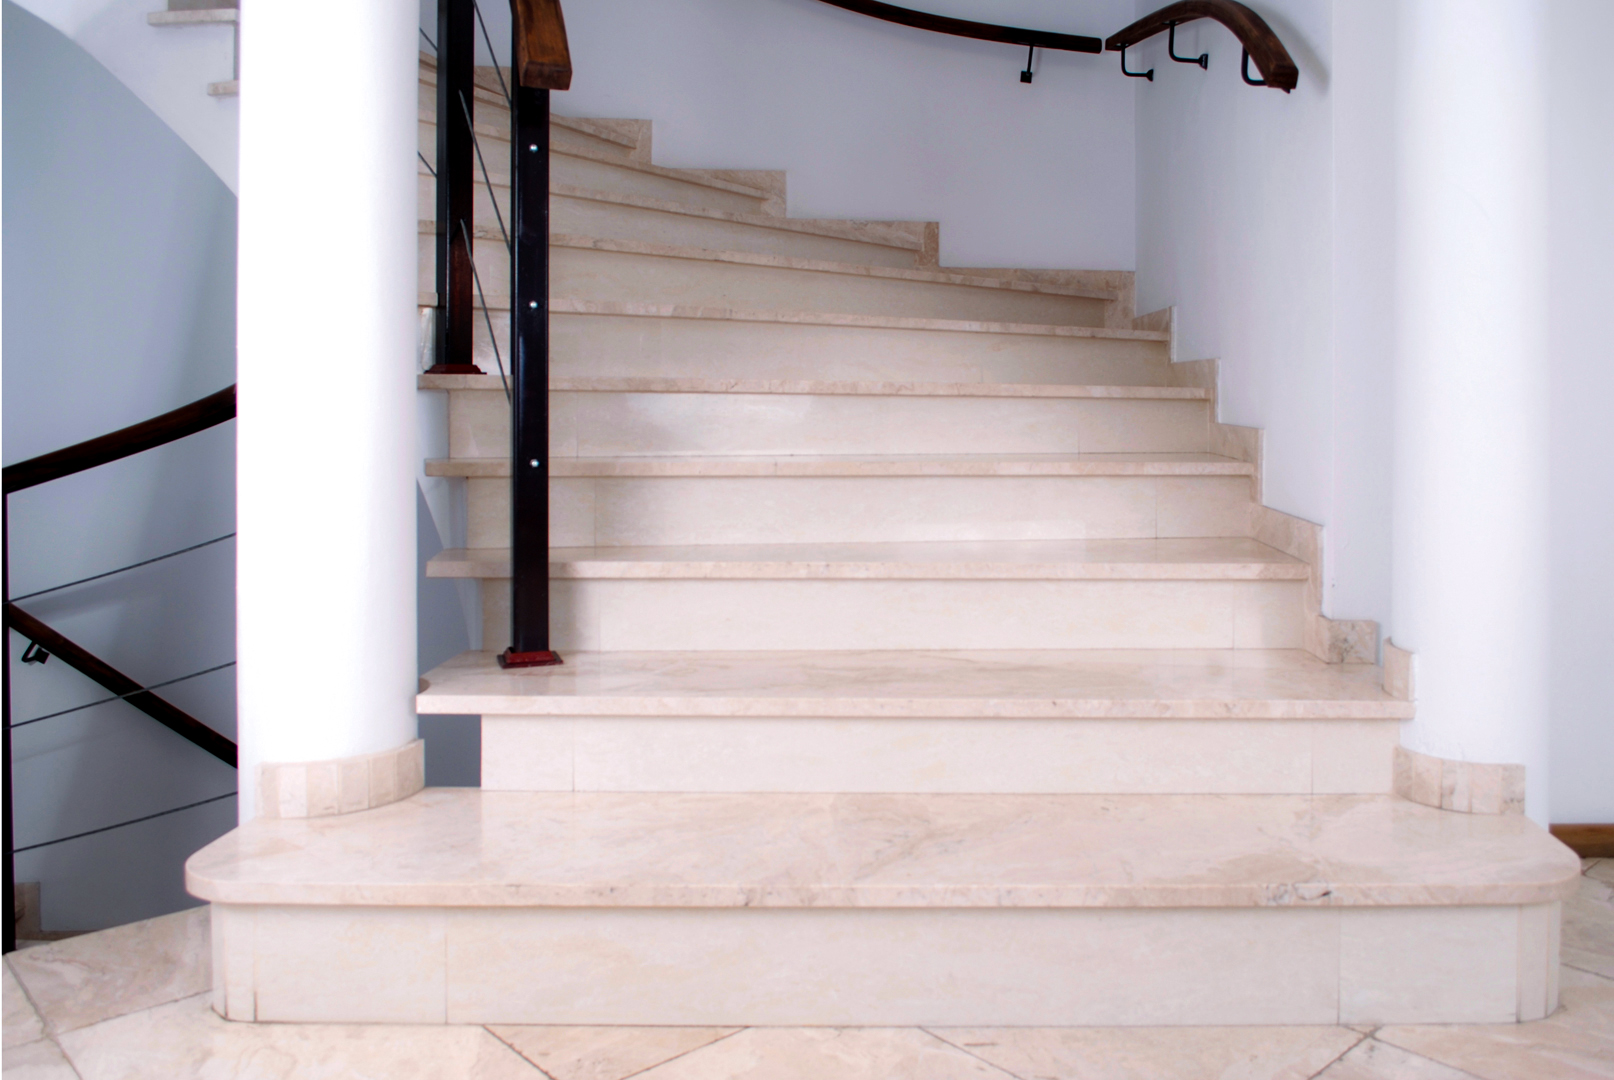 Schody granitowe – Dlaczego warto wykonać schody z kamienia naturalnego? Schody z granitu czy schody marmurowe?